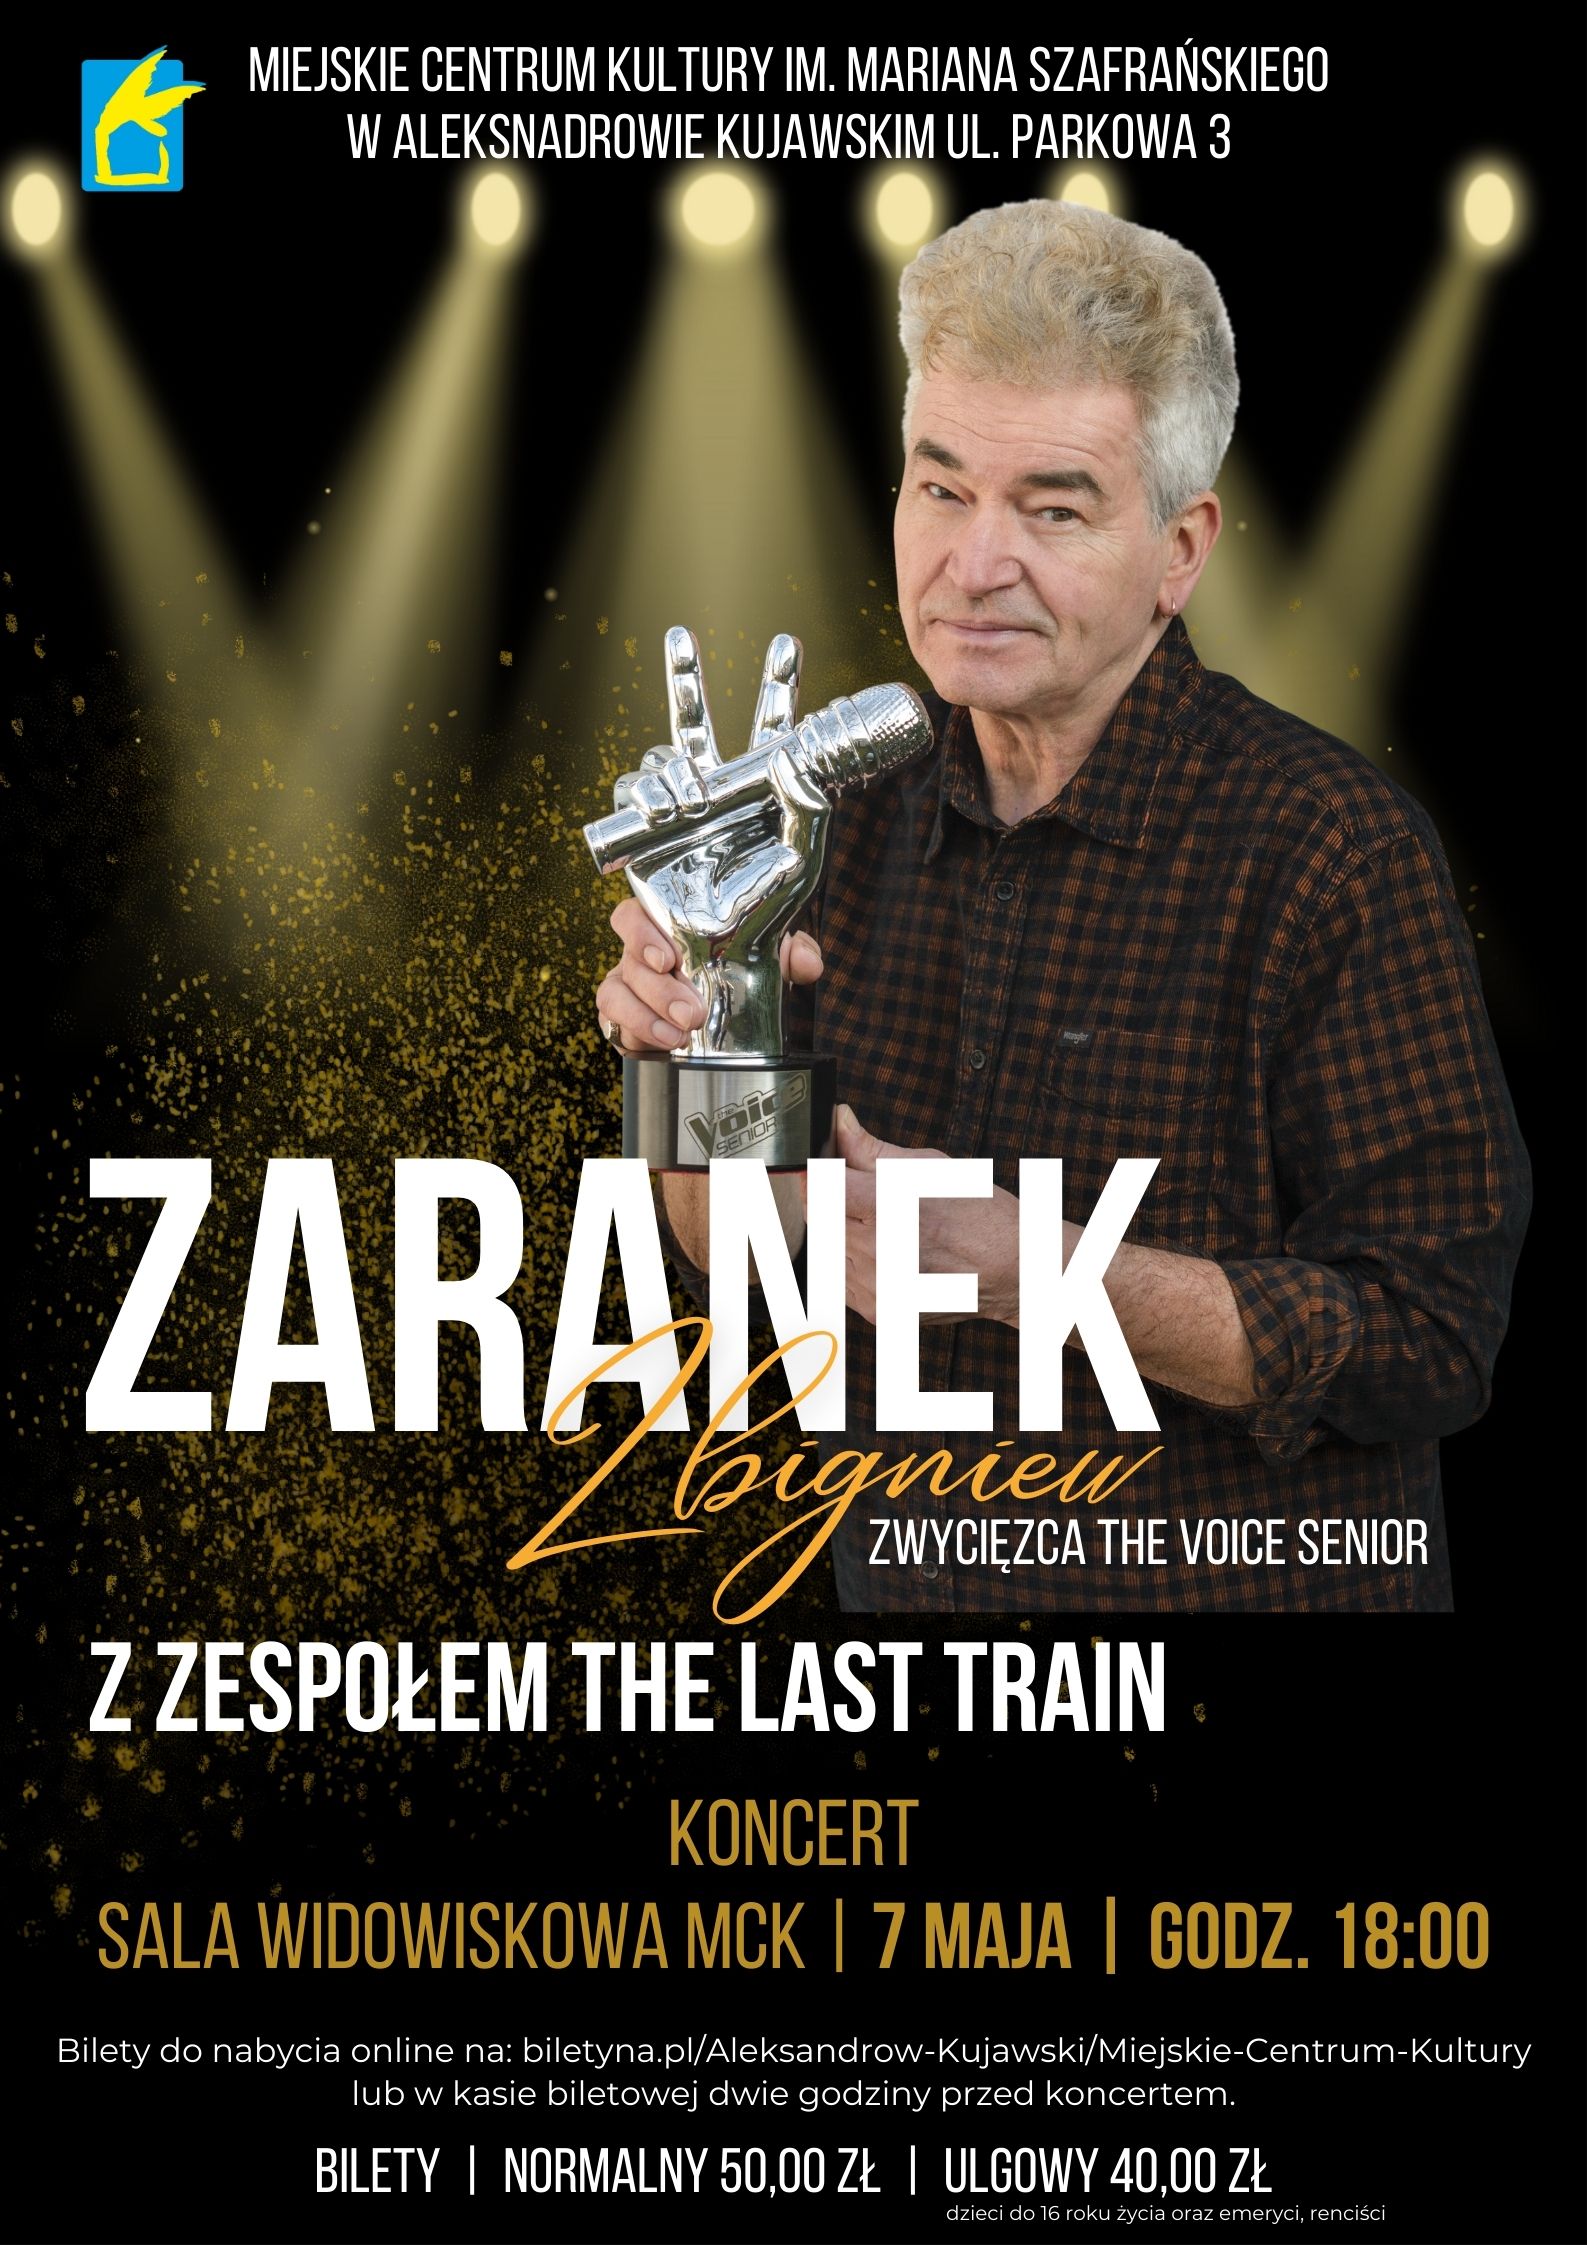 Koncert - Zbigniew Zaranek